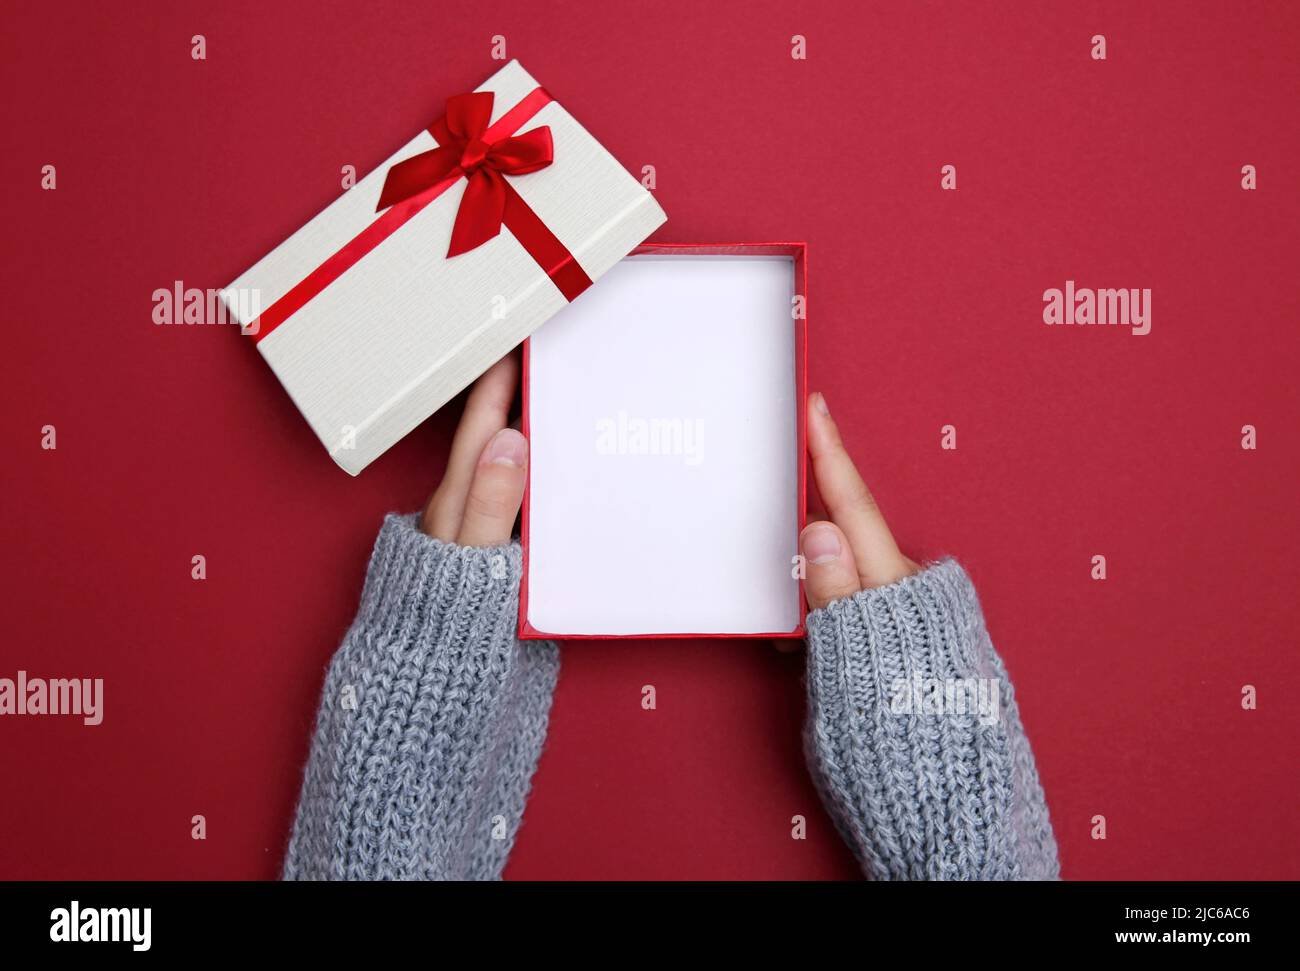 Hände halten Geschenkbox geöffnet Draufsicht. Produktwerbung Raum Display.Holiday Stuff Promotion Design. Stockfoto